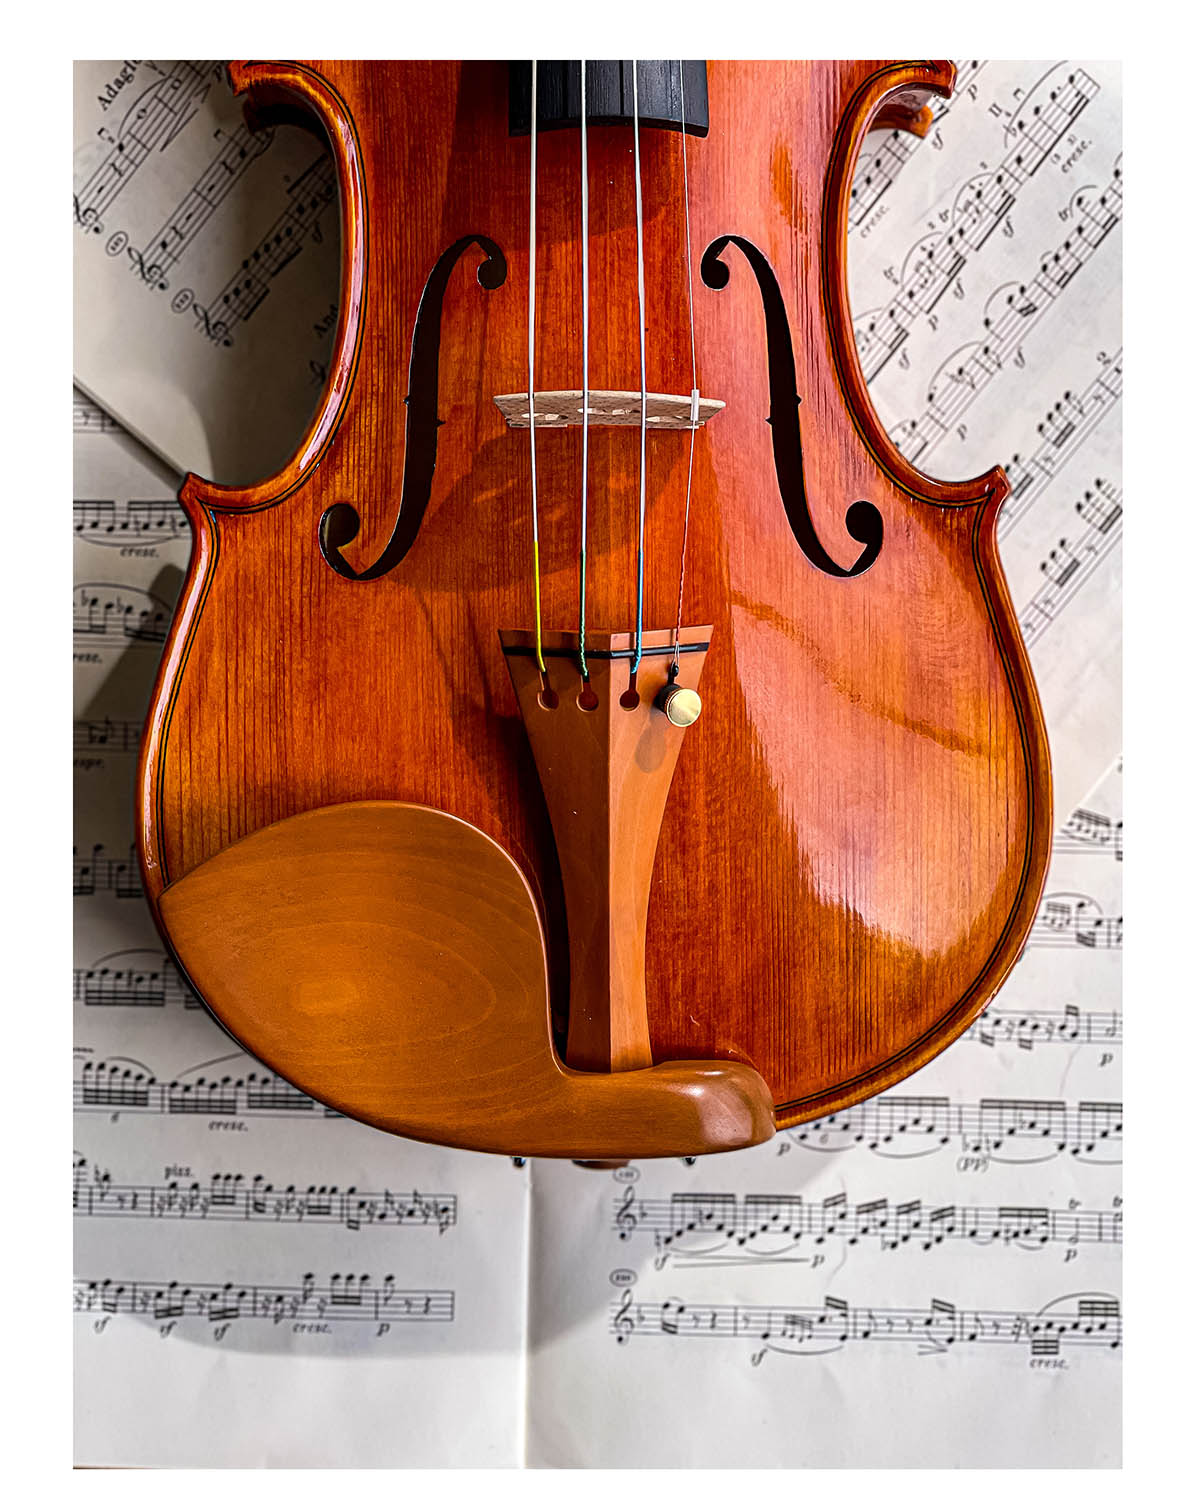 Guarneri Kinnhalter Violine Buchsbaum, ZK-4259